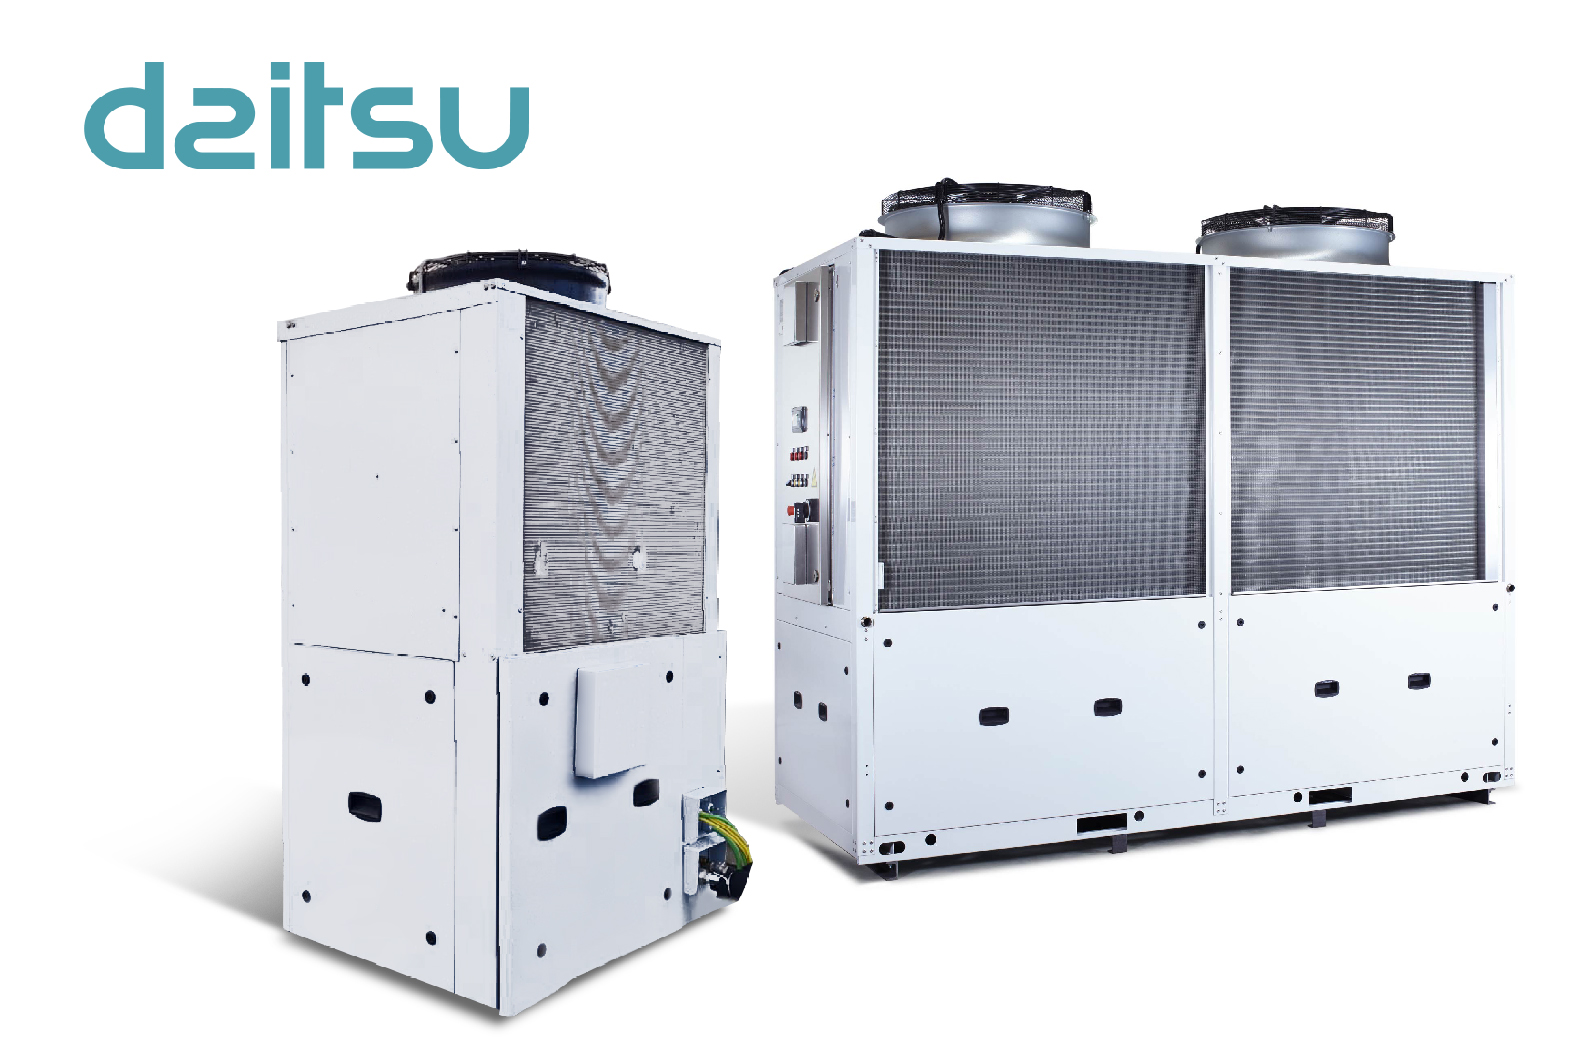 Eurofred aposta na sustentabilidade e maximiza a poupança com a nova bomba de calor de CO2 HT Pro da Daitsu